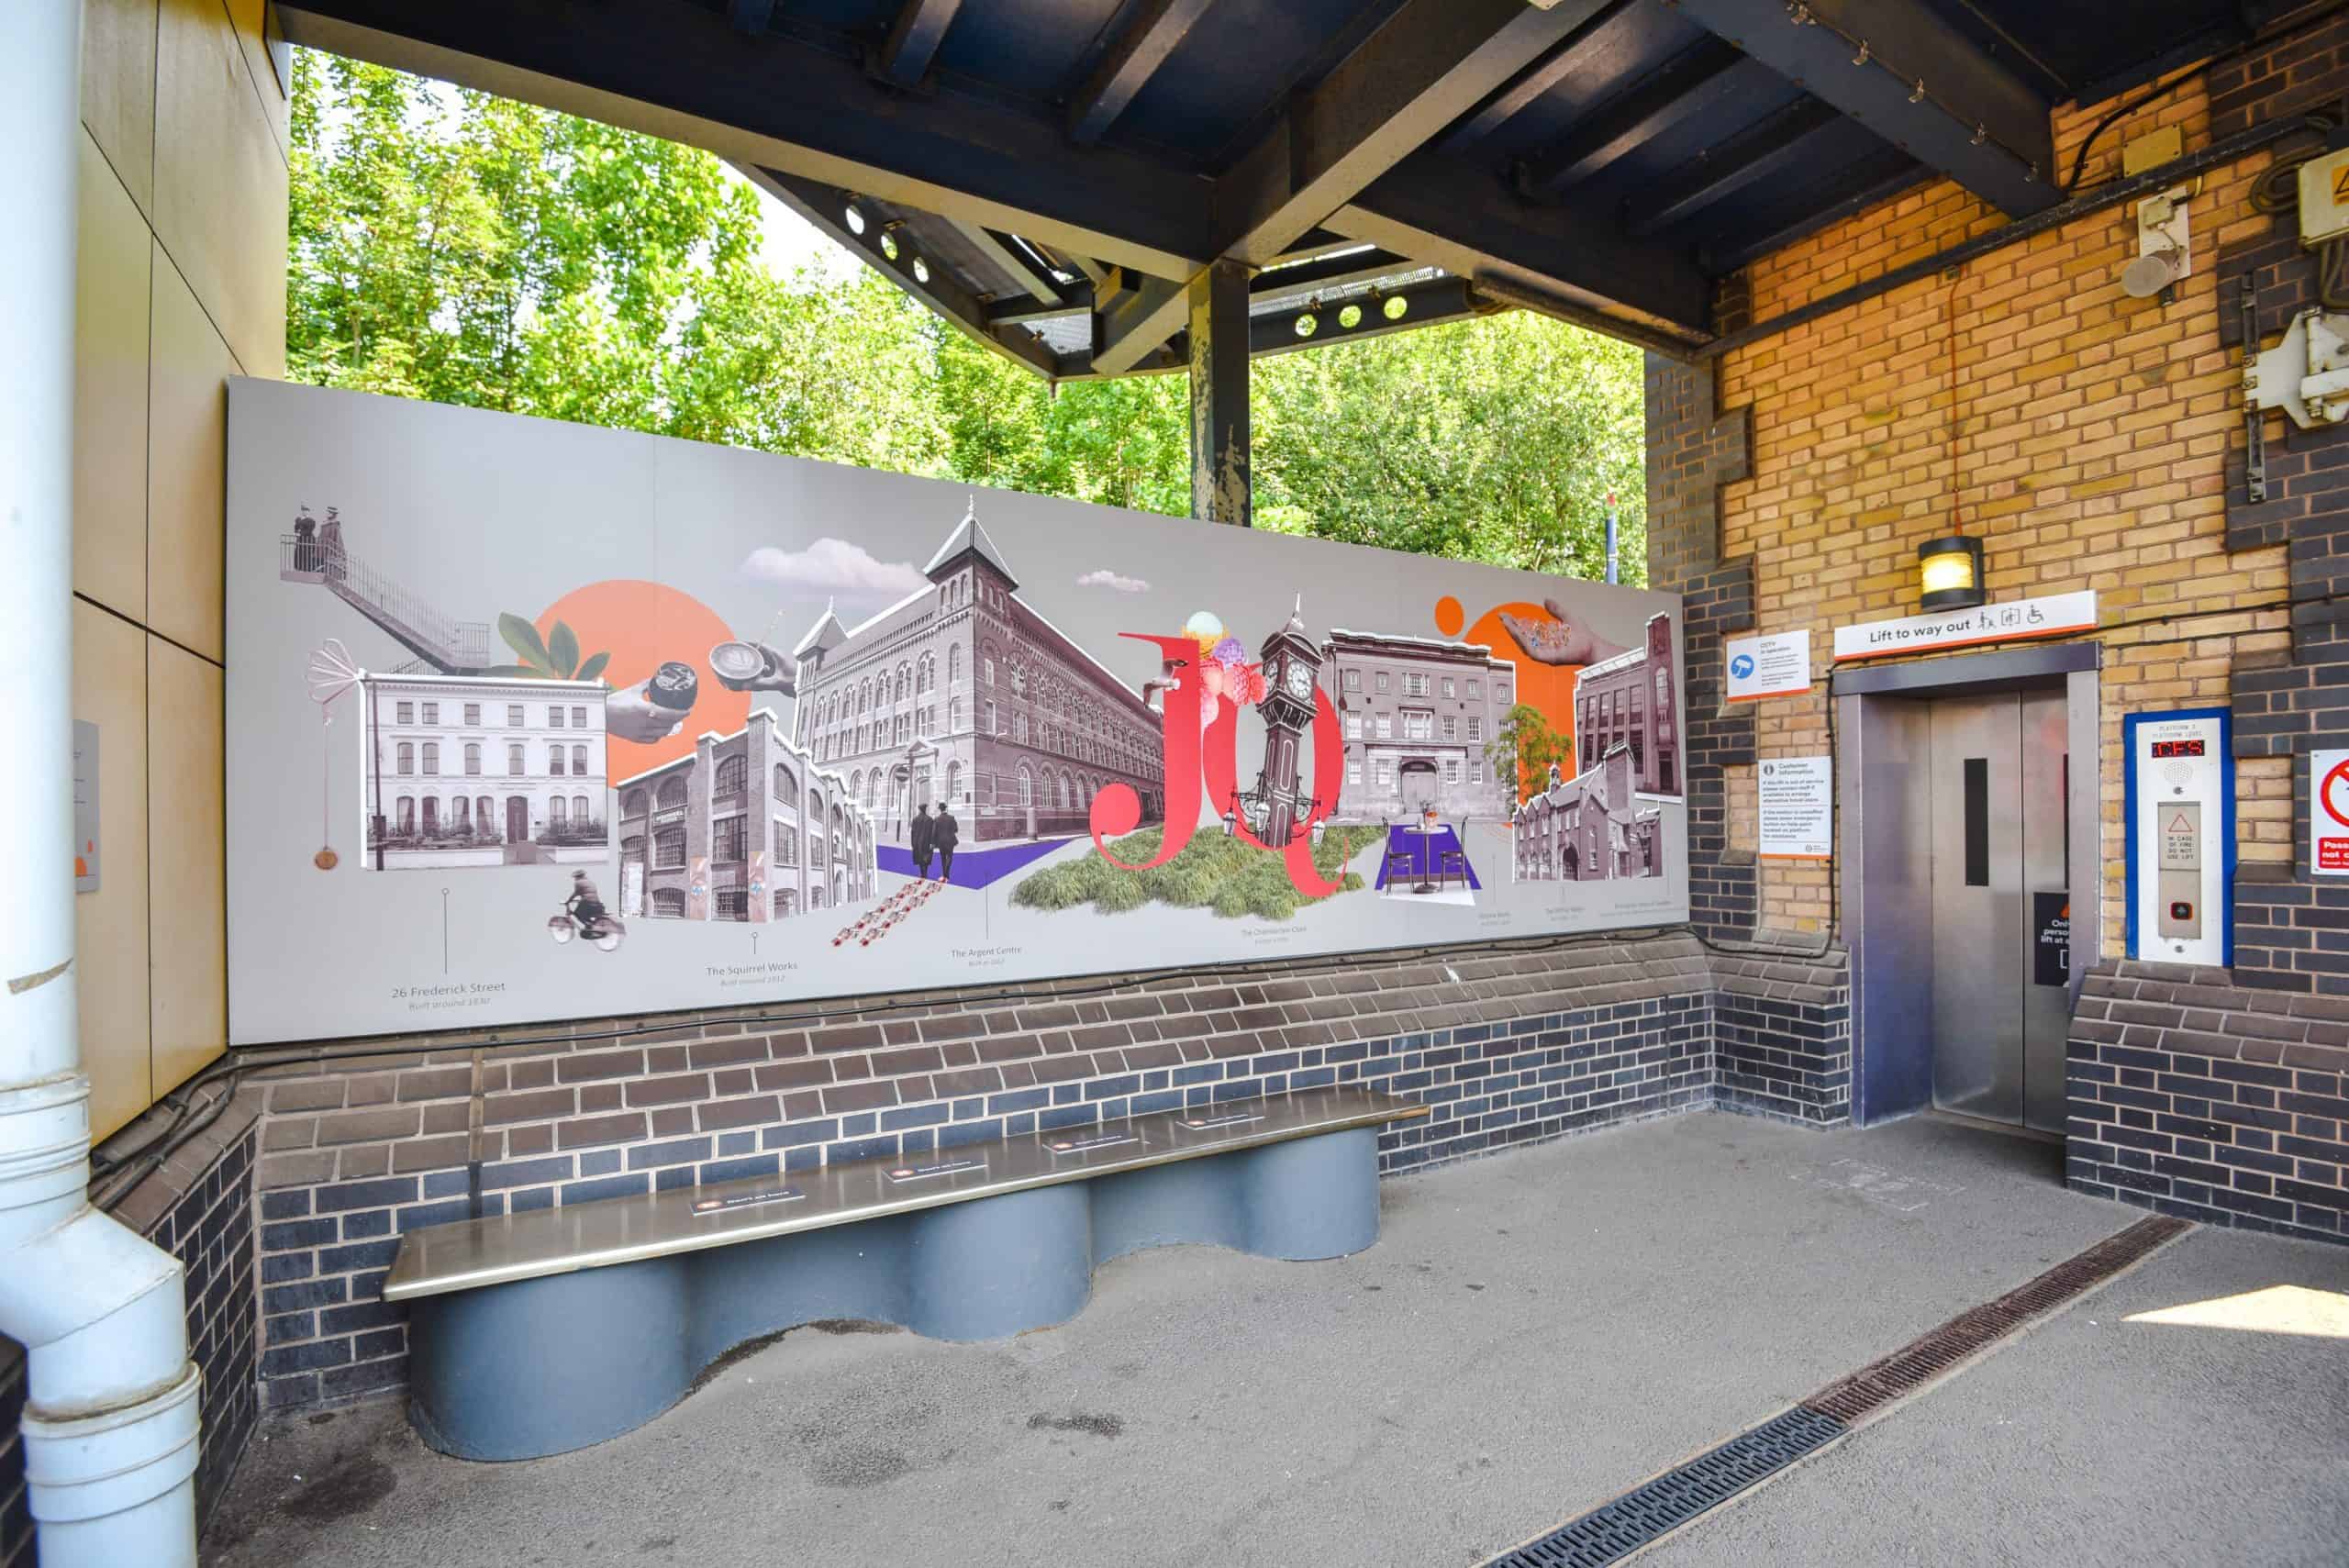 Jewellery Quarter station art mural